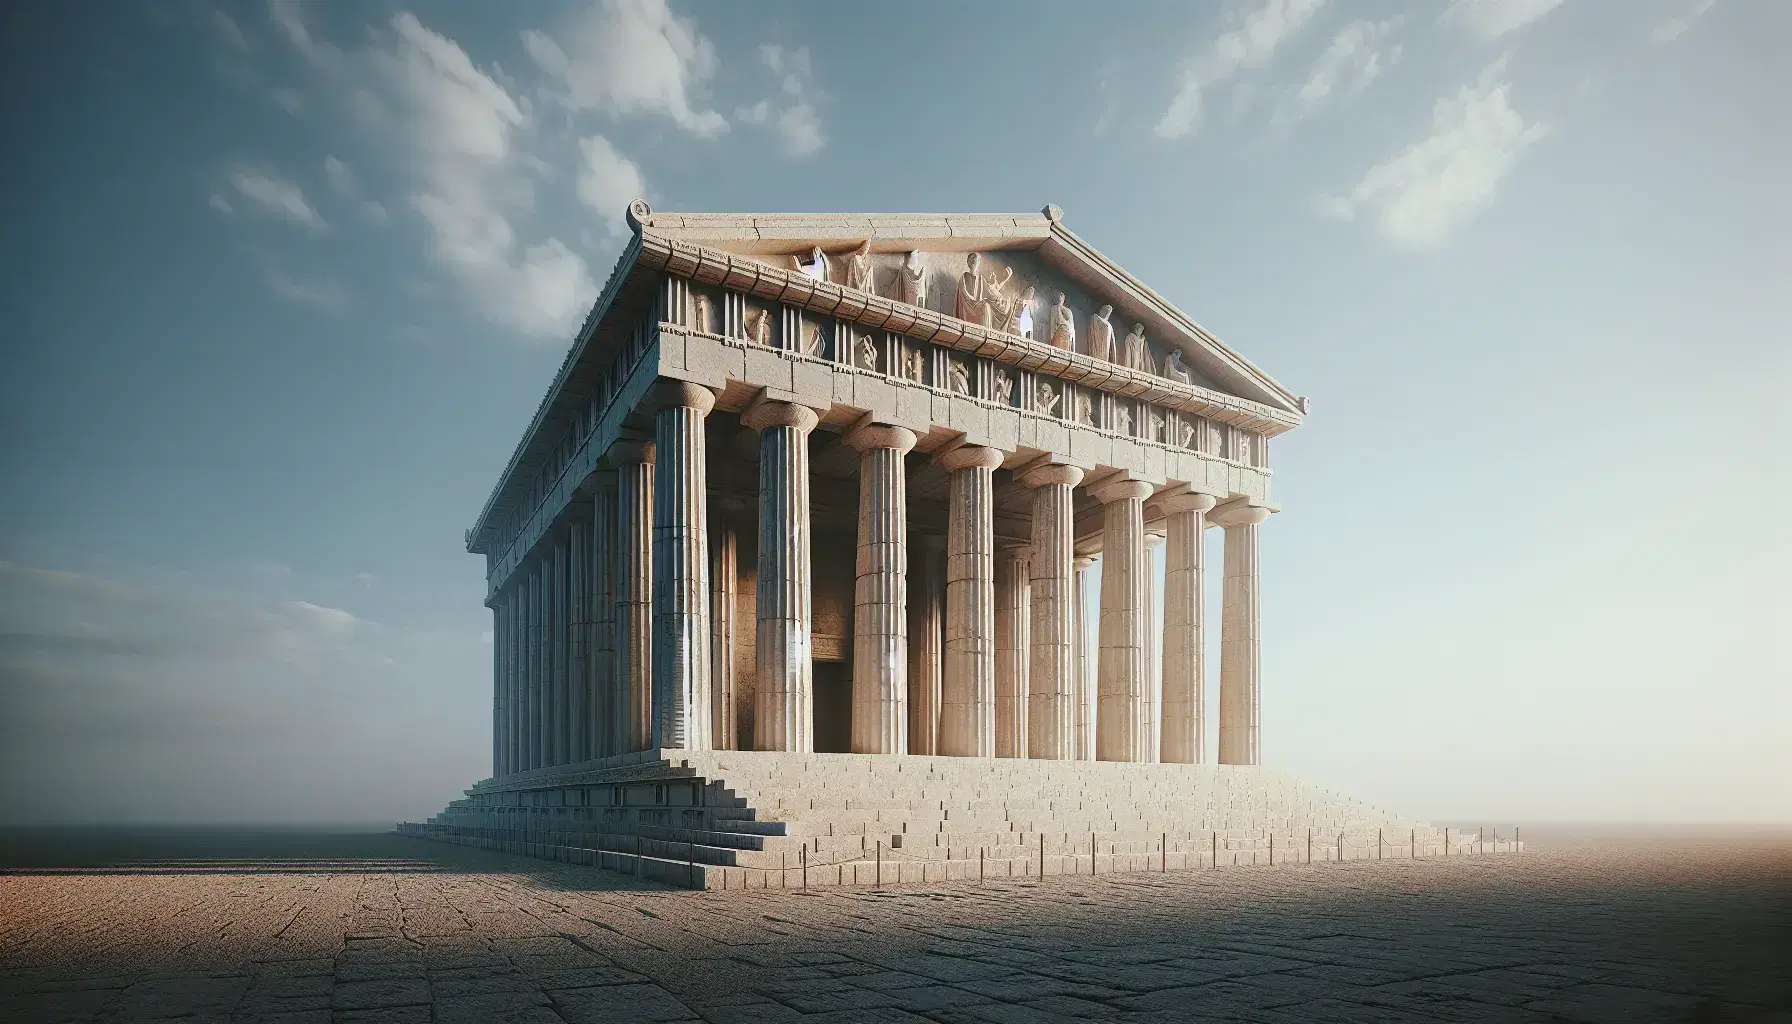 Tempio greco antico con colonne doriche, architrave rettangolare e fregio scolpito, sotto cielo azzurro sereno.